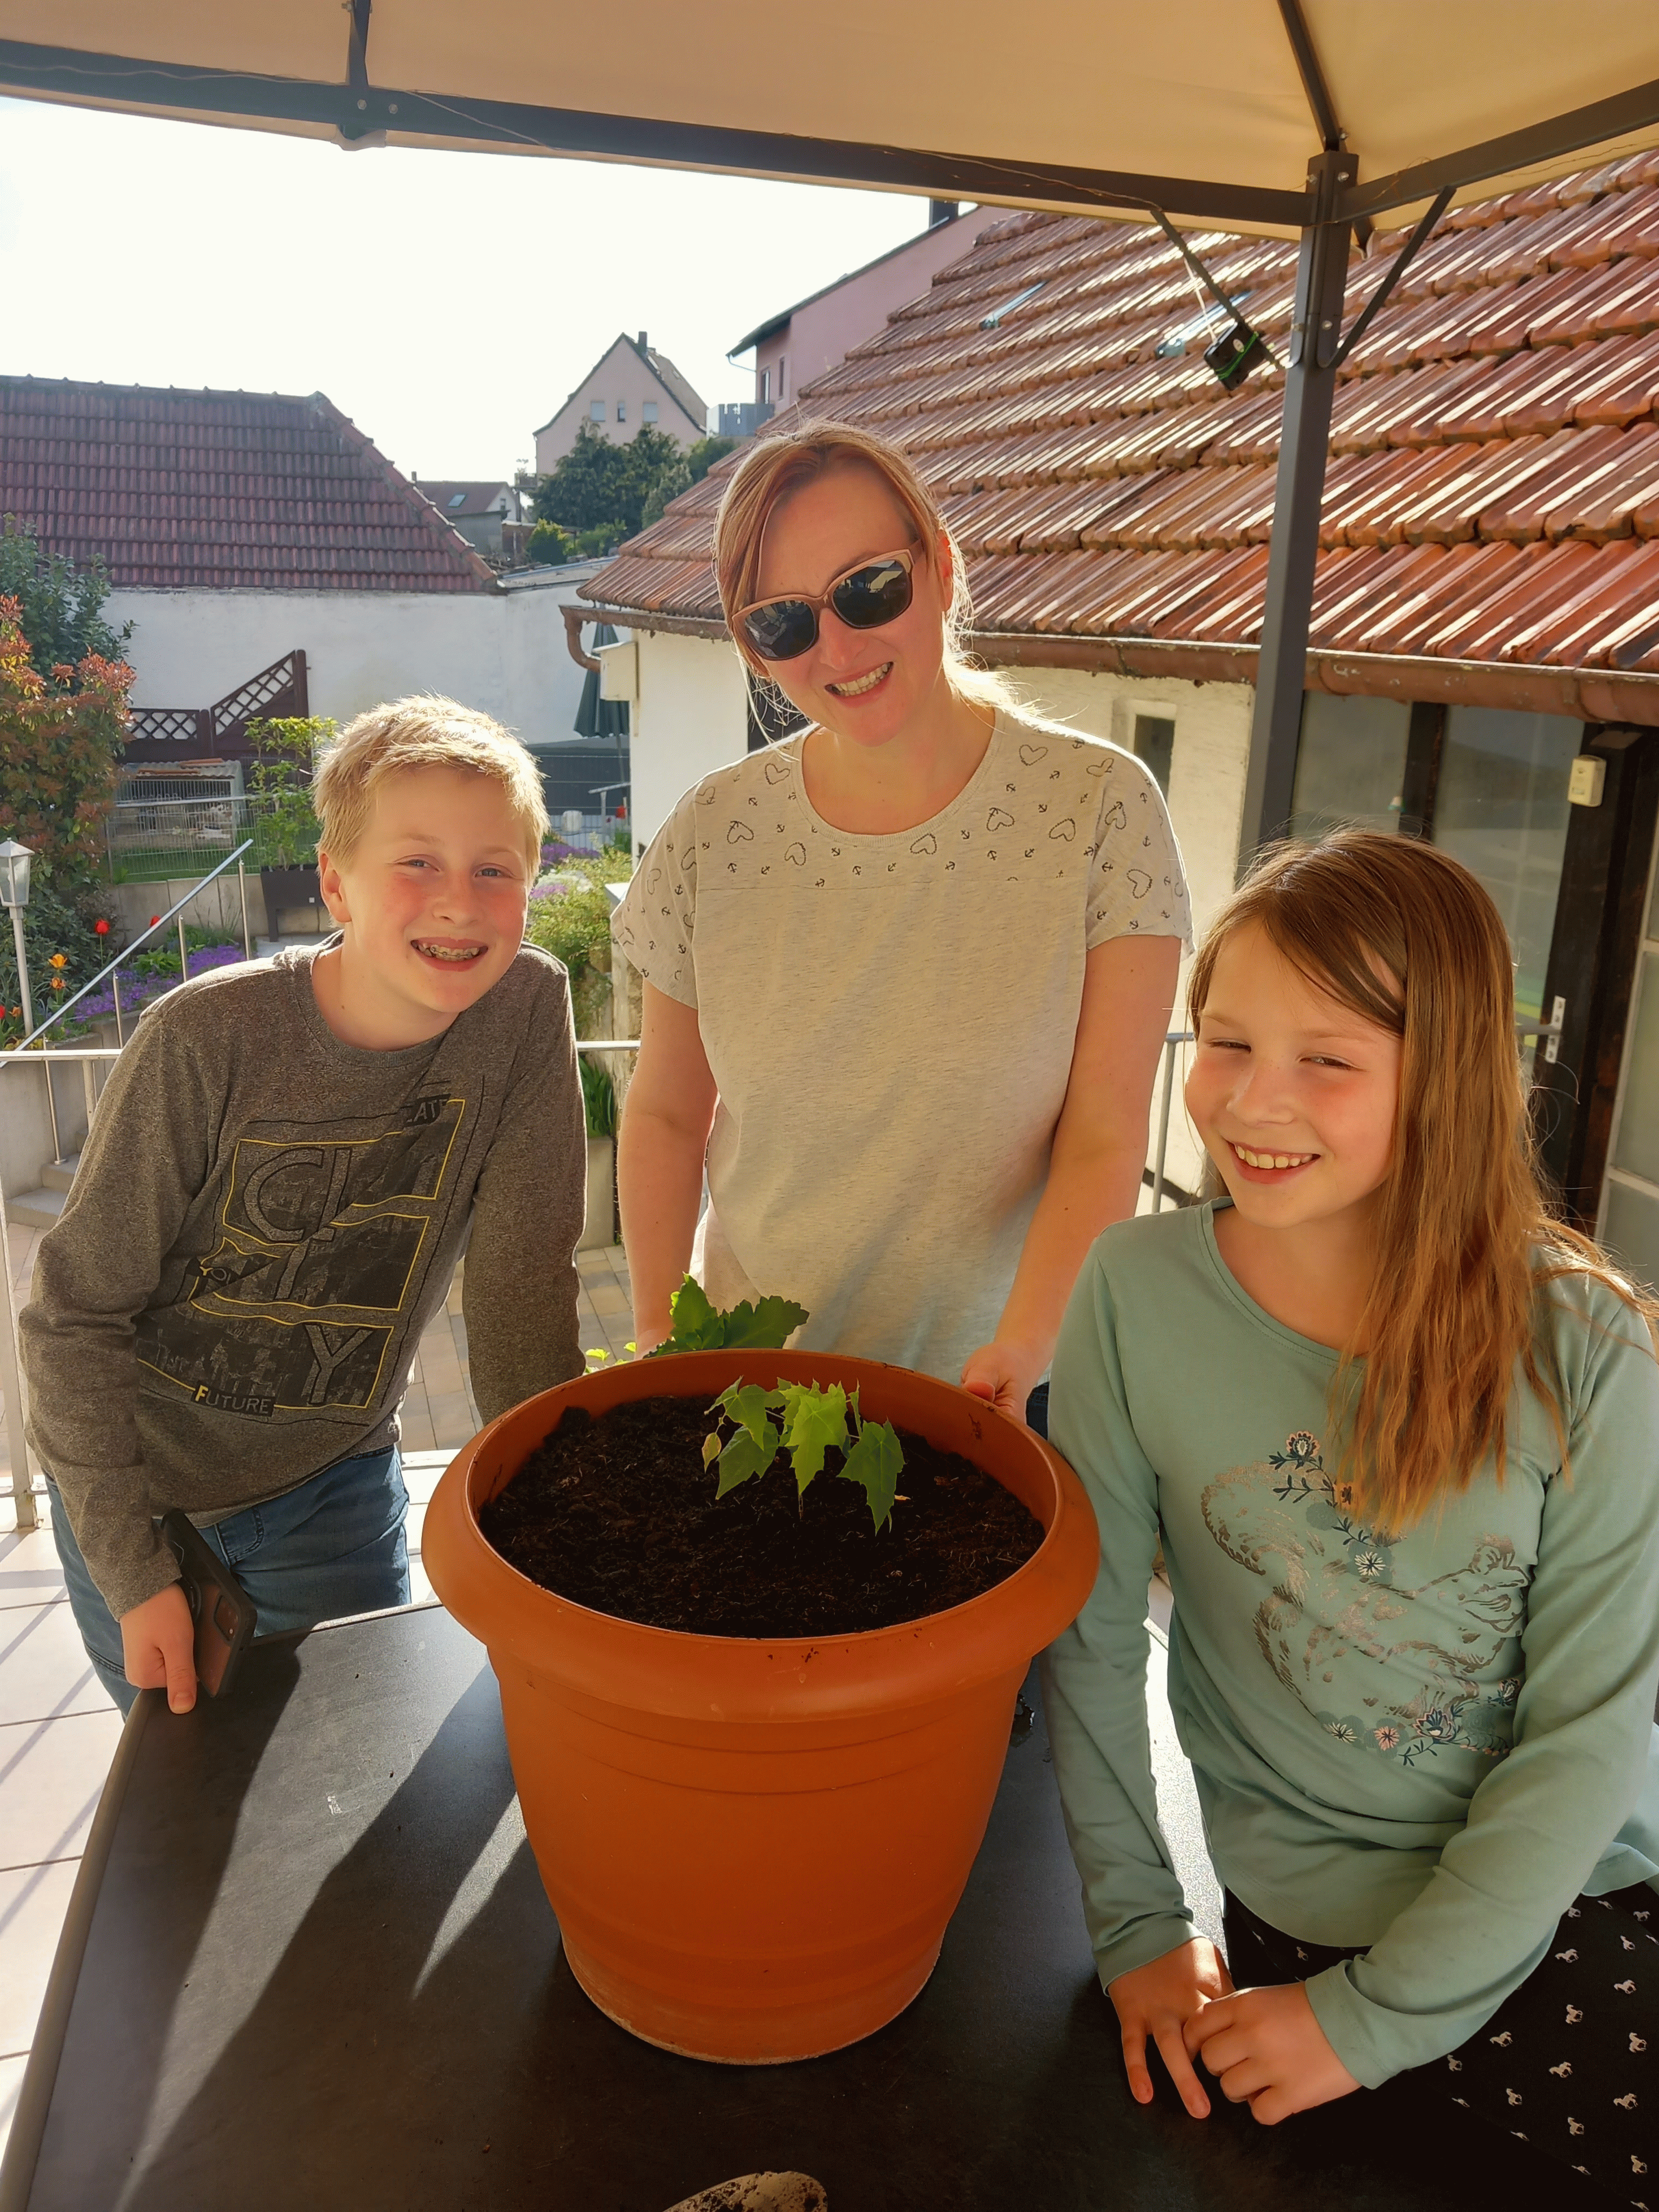 Eva Urlaub und ihre Familien pflanzen in Würzburg einen Ahorn.